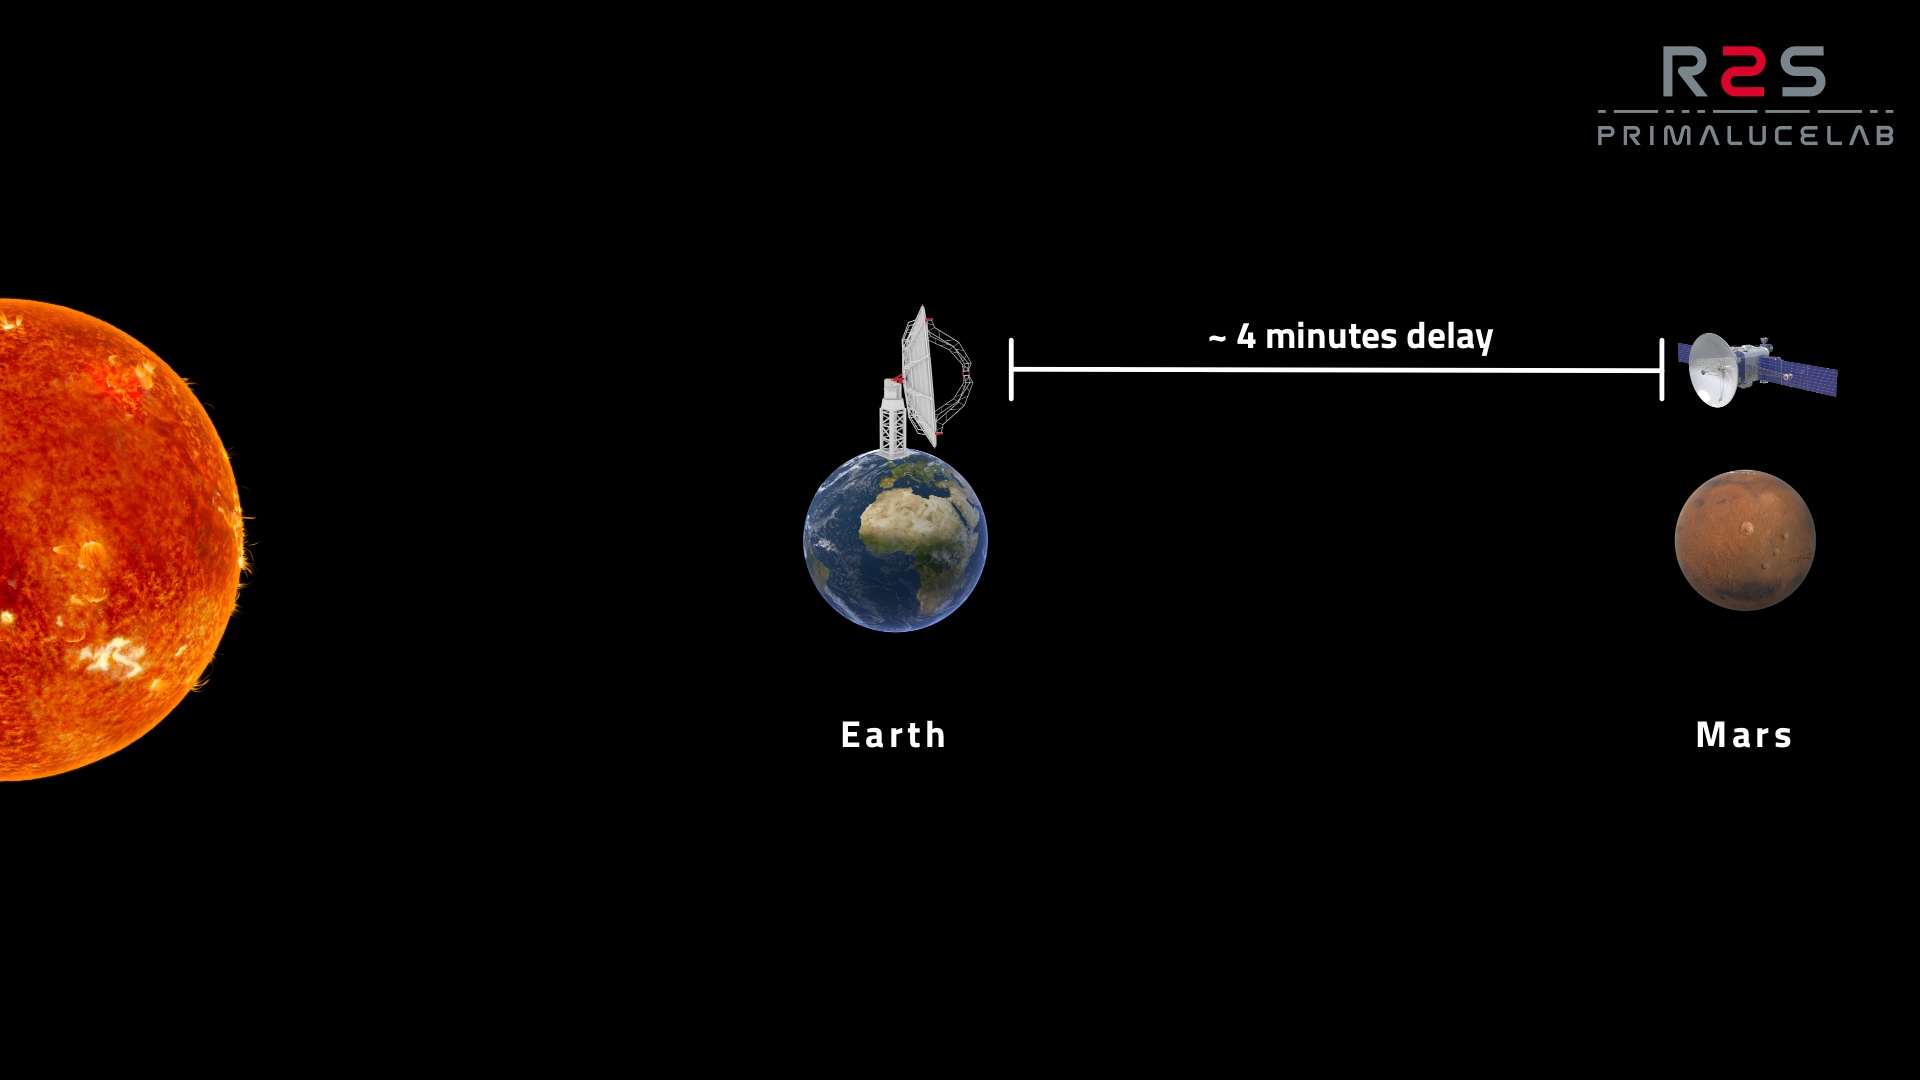 Cos'è la comunicazione spaziale: al massimo avvicinamento a Marte, un segnale trasmesso alla Terra impiegherà circa 4 minuti per arrivare. Immagine non in scala.